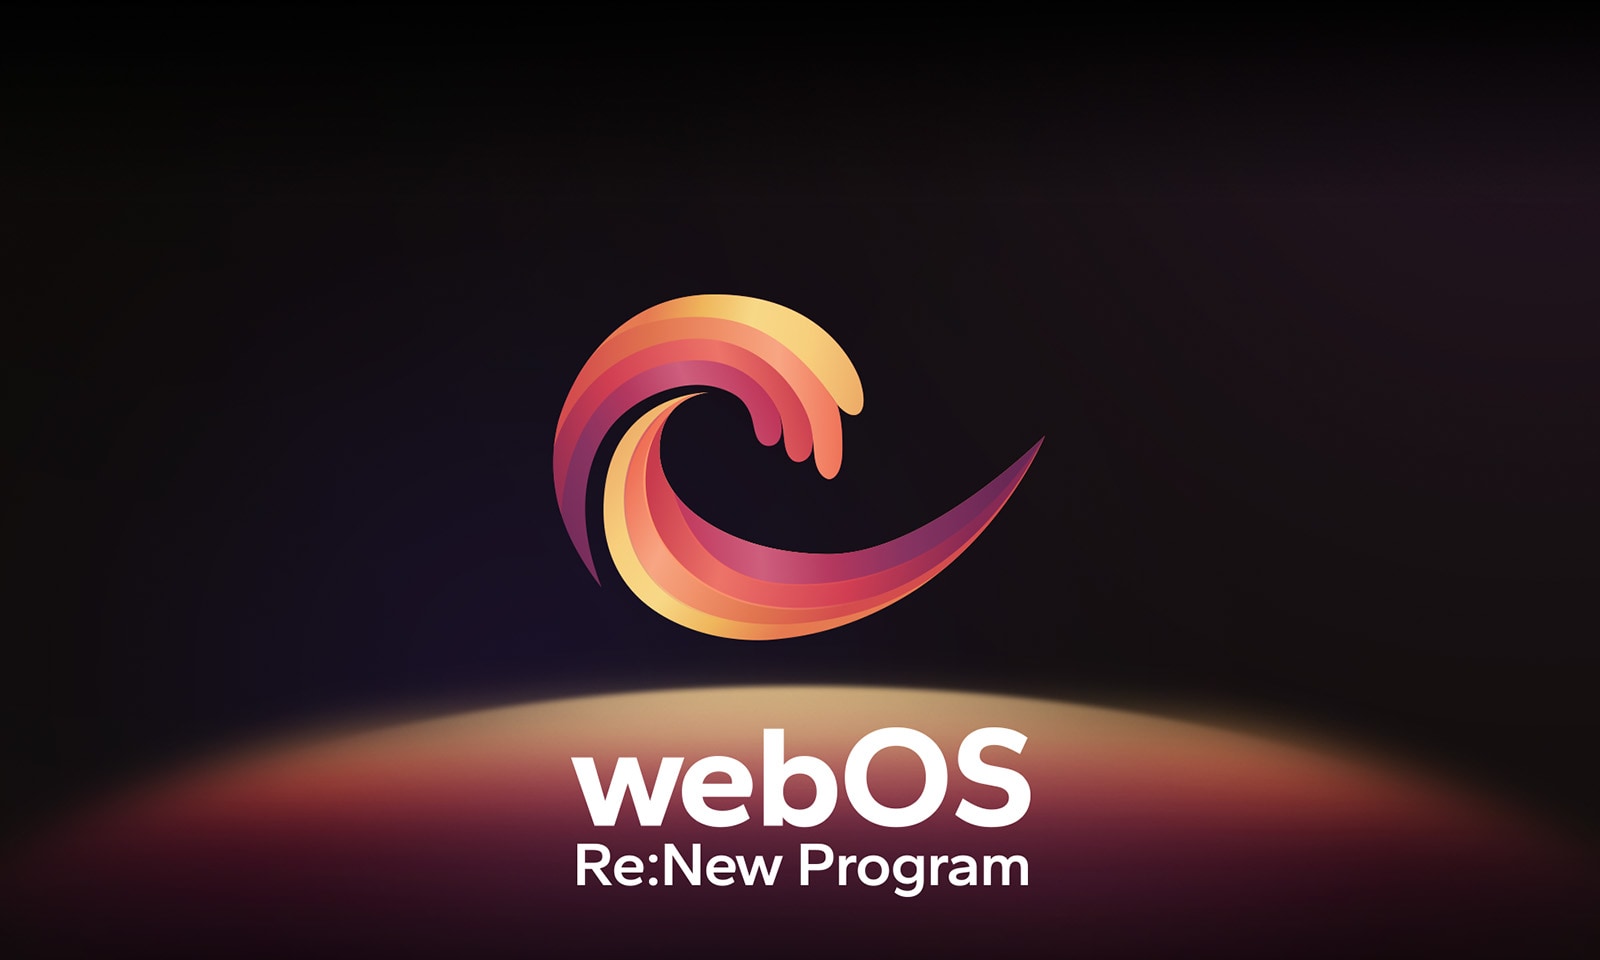 صورة لشعار webOS Re:New Program يتم عرضه على خلفية سوداء مع الجزء العلوي من كرة دائرية زرقاء وأرجوانية في الأسفل. 